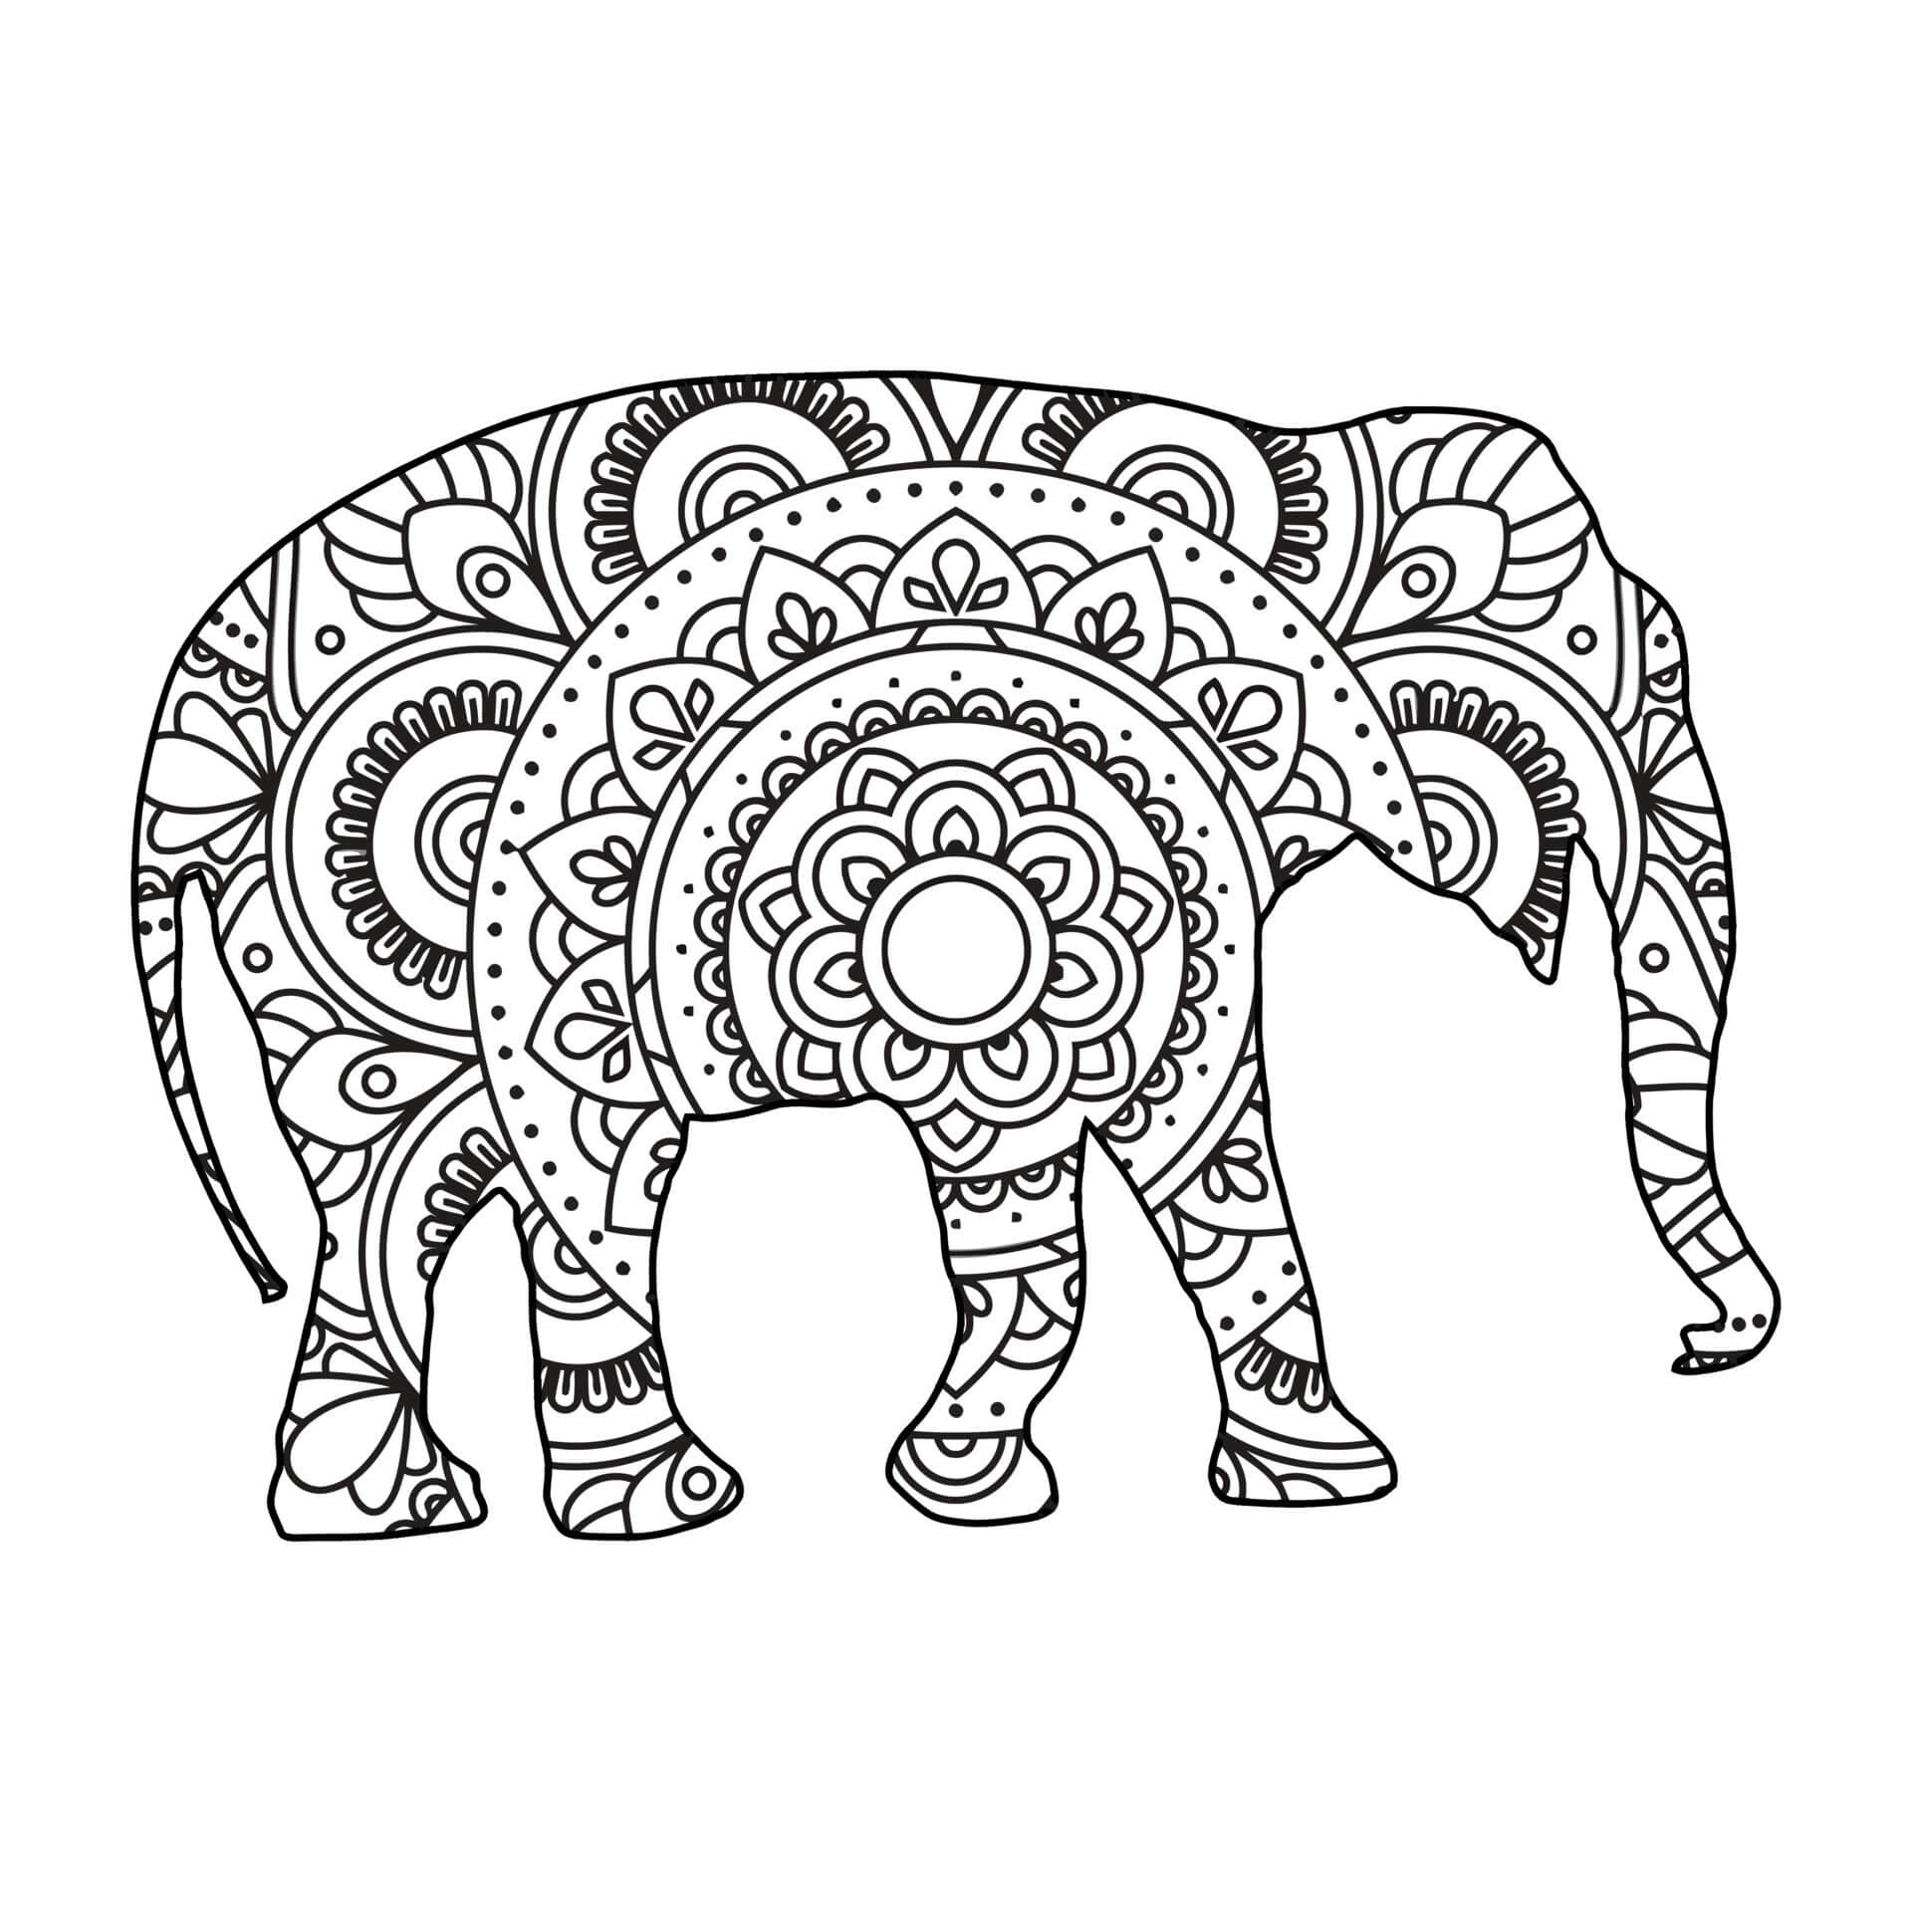 Mandala Elephant Coloring Page - Sheet 9 Mandalas